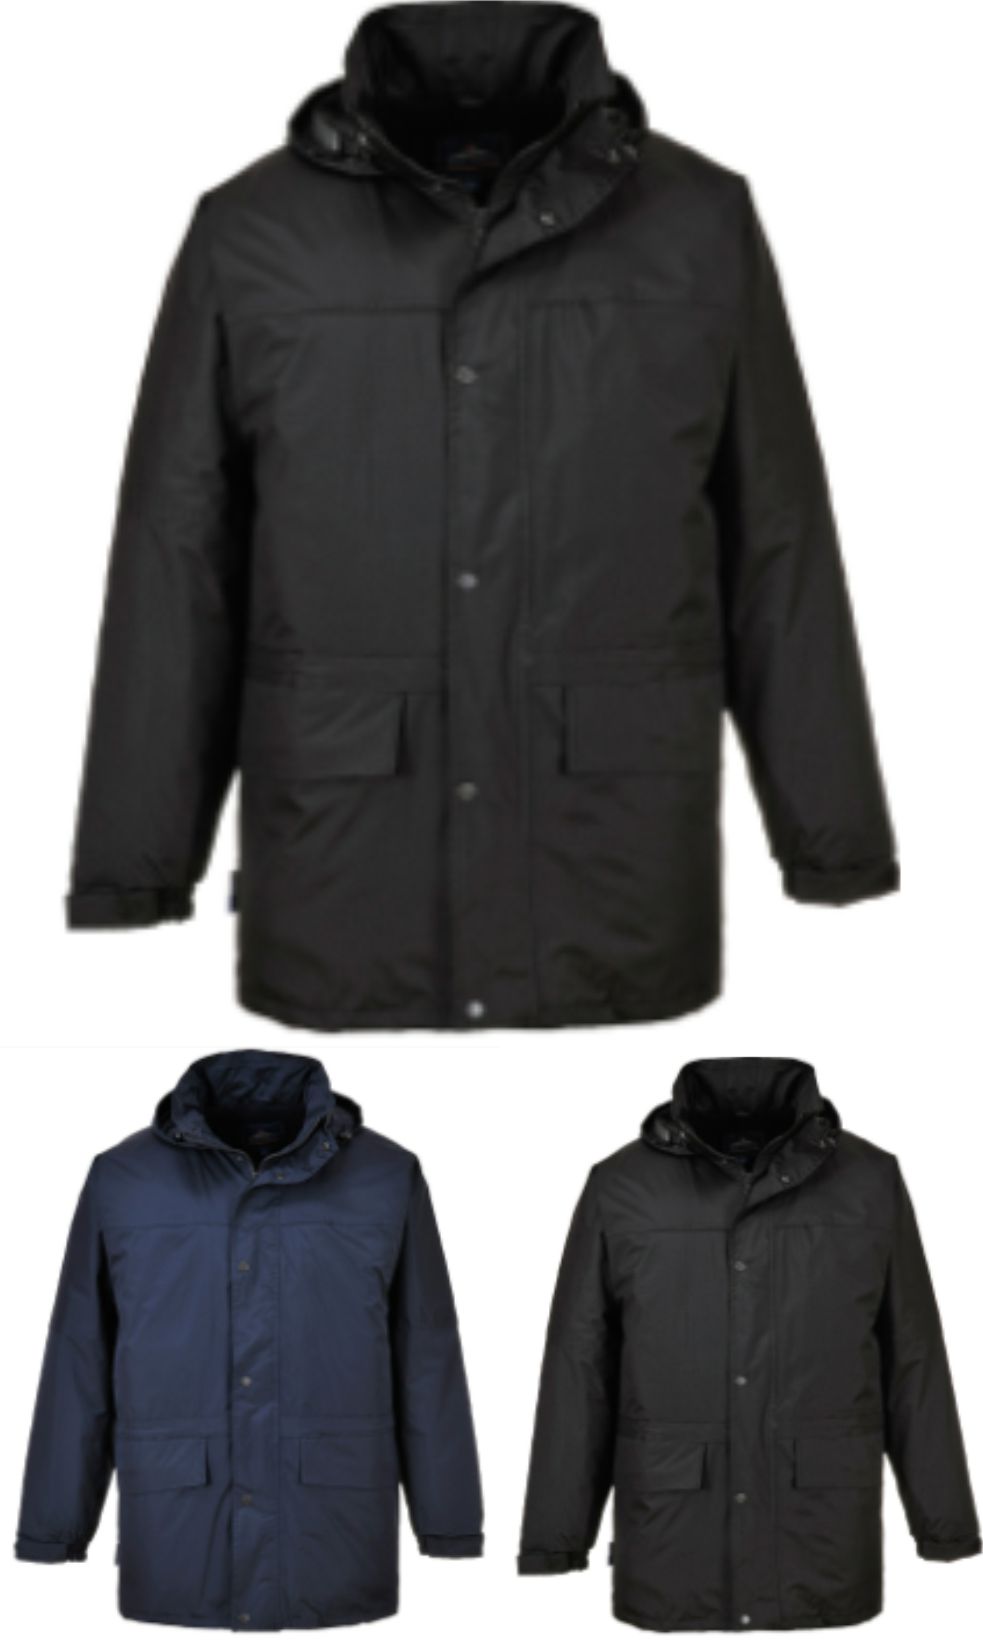 S523 Oban 3/4 length jacket